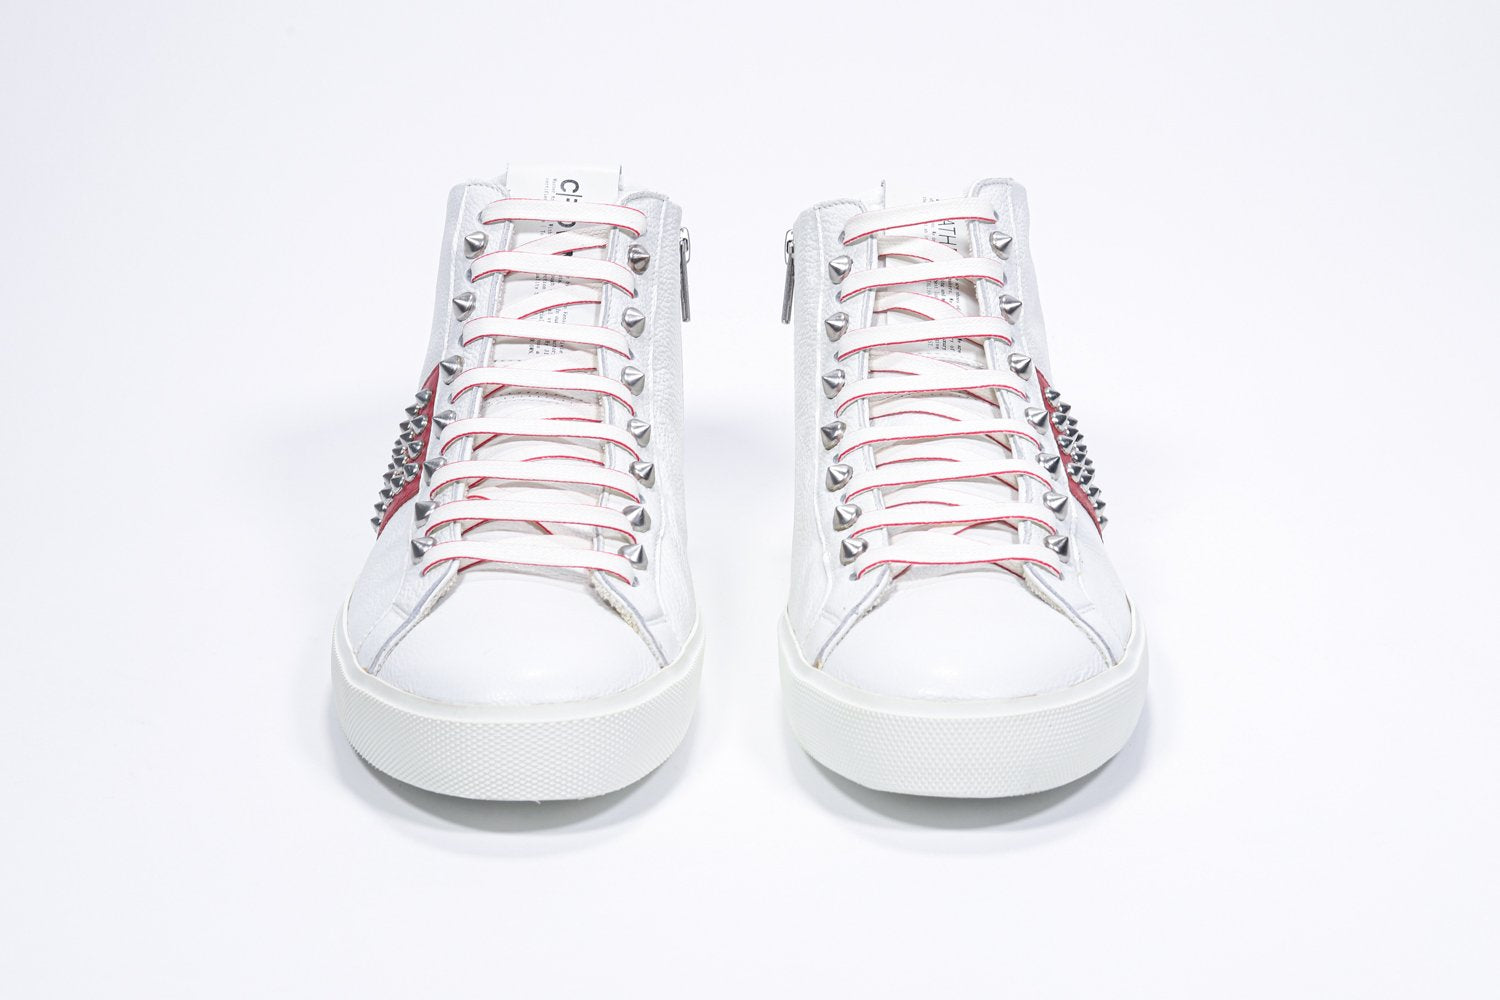 Vue de face du modèle mid top blanc et rouge sneaker. Tige en cuir avec clous, fermeture à glissière intérieure et semelle en caoutchouc blanc.